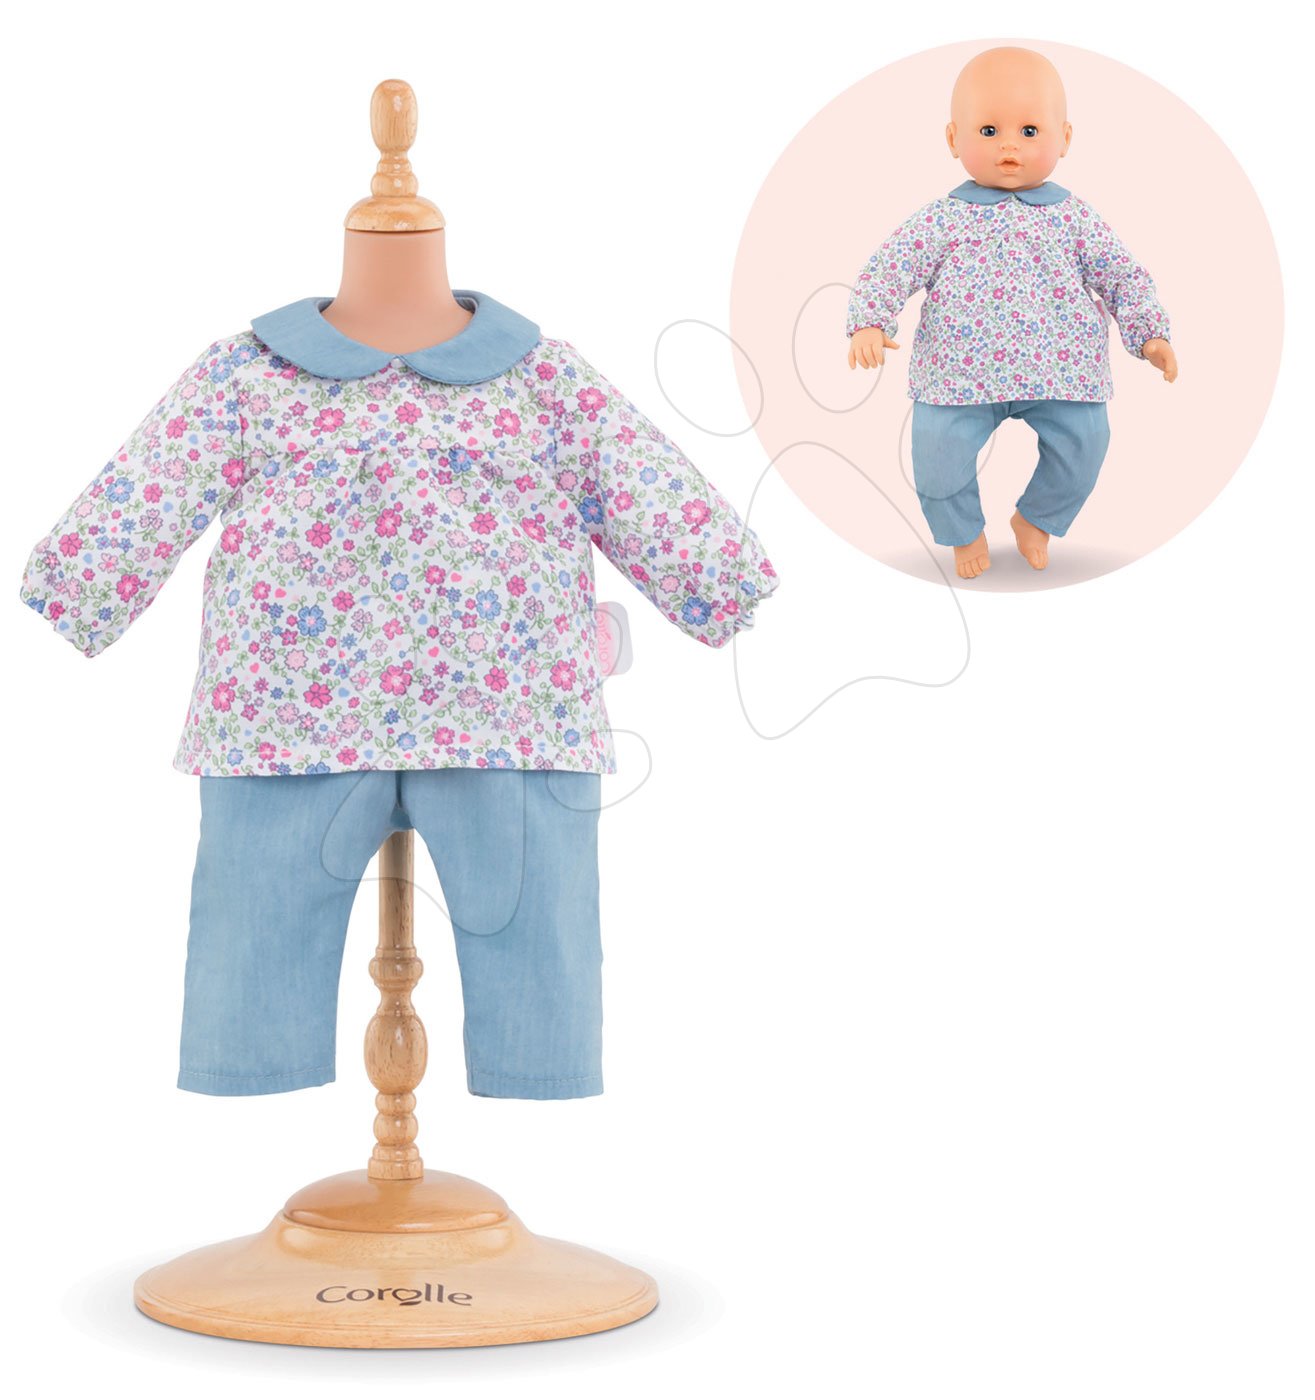 E-shop Oblečenie Blouse Flower & Pants Mon Grand Poupon Corolle pre 42 cm bábiku od 24 mes